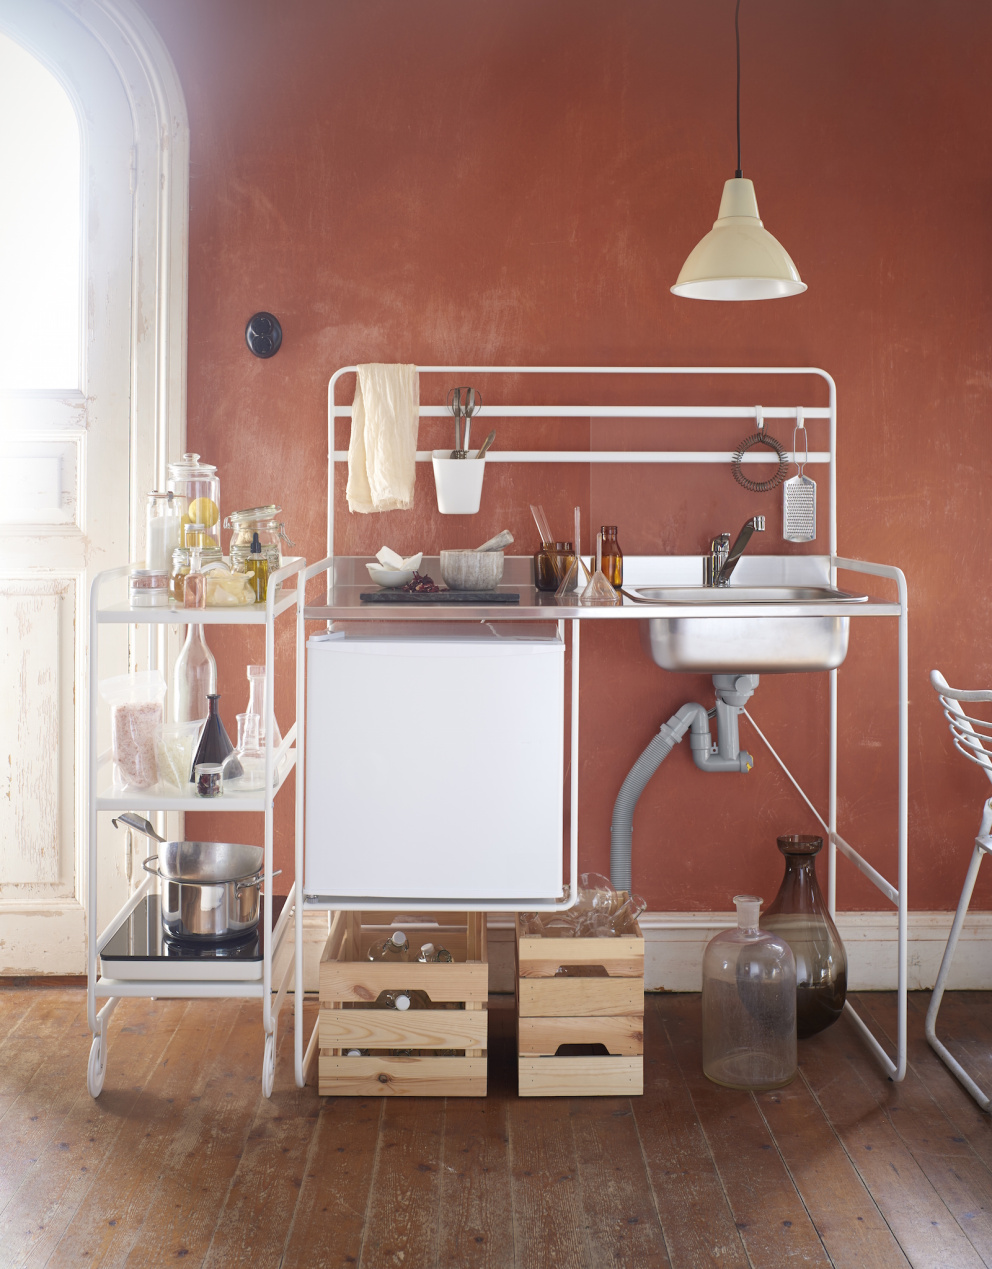 Ikea vyrábí minimalistickou solitérní kuchyni vhodnou pro ty, kteří se často stěhují.